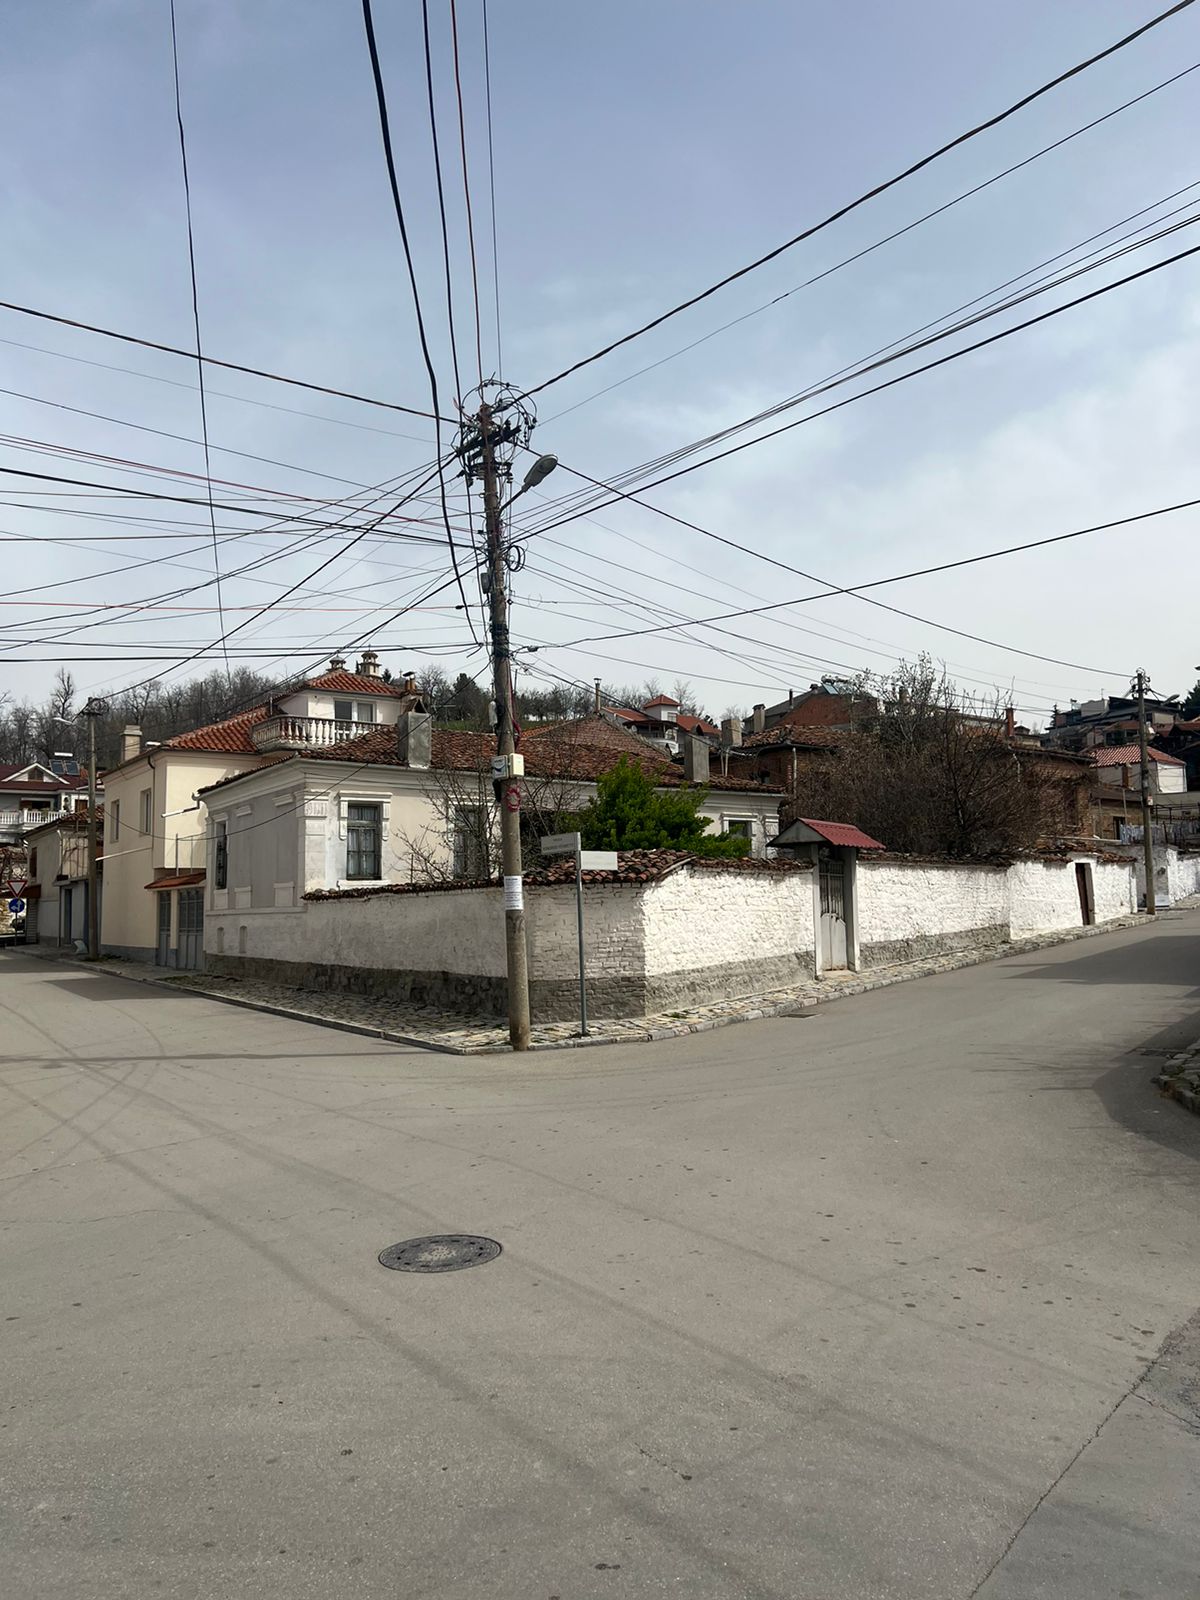 Foto e Shtëpi në shitje Lgj.1, rr. Konferenca e Labinotit 17, Korçë